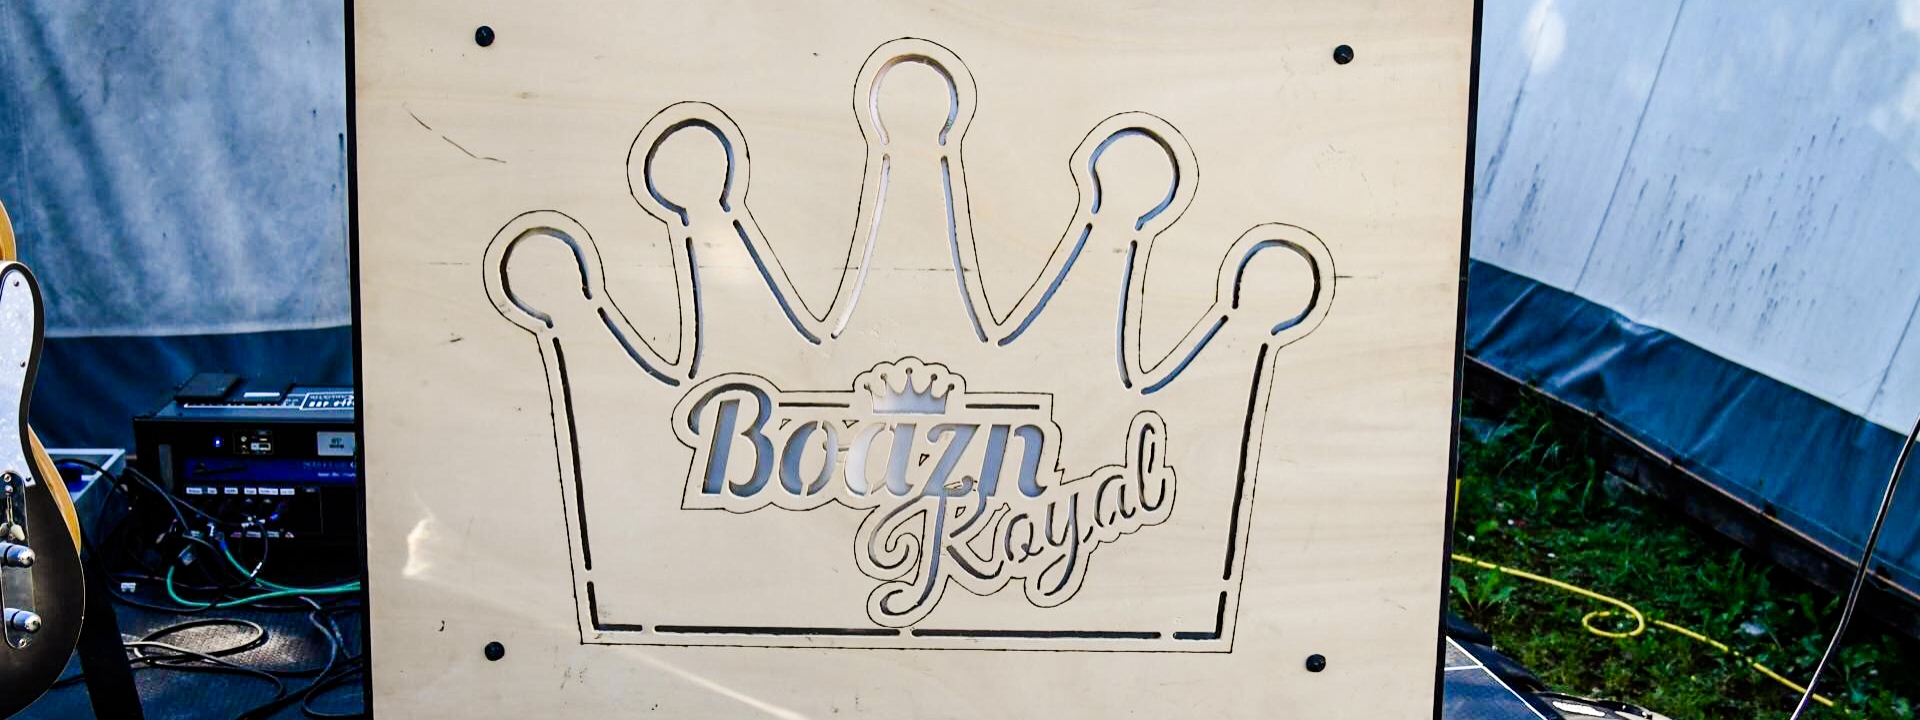 Foto: Holzschild mit einer Krone als Logo und der Schrift "Boazn Royal"